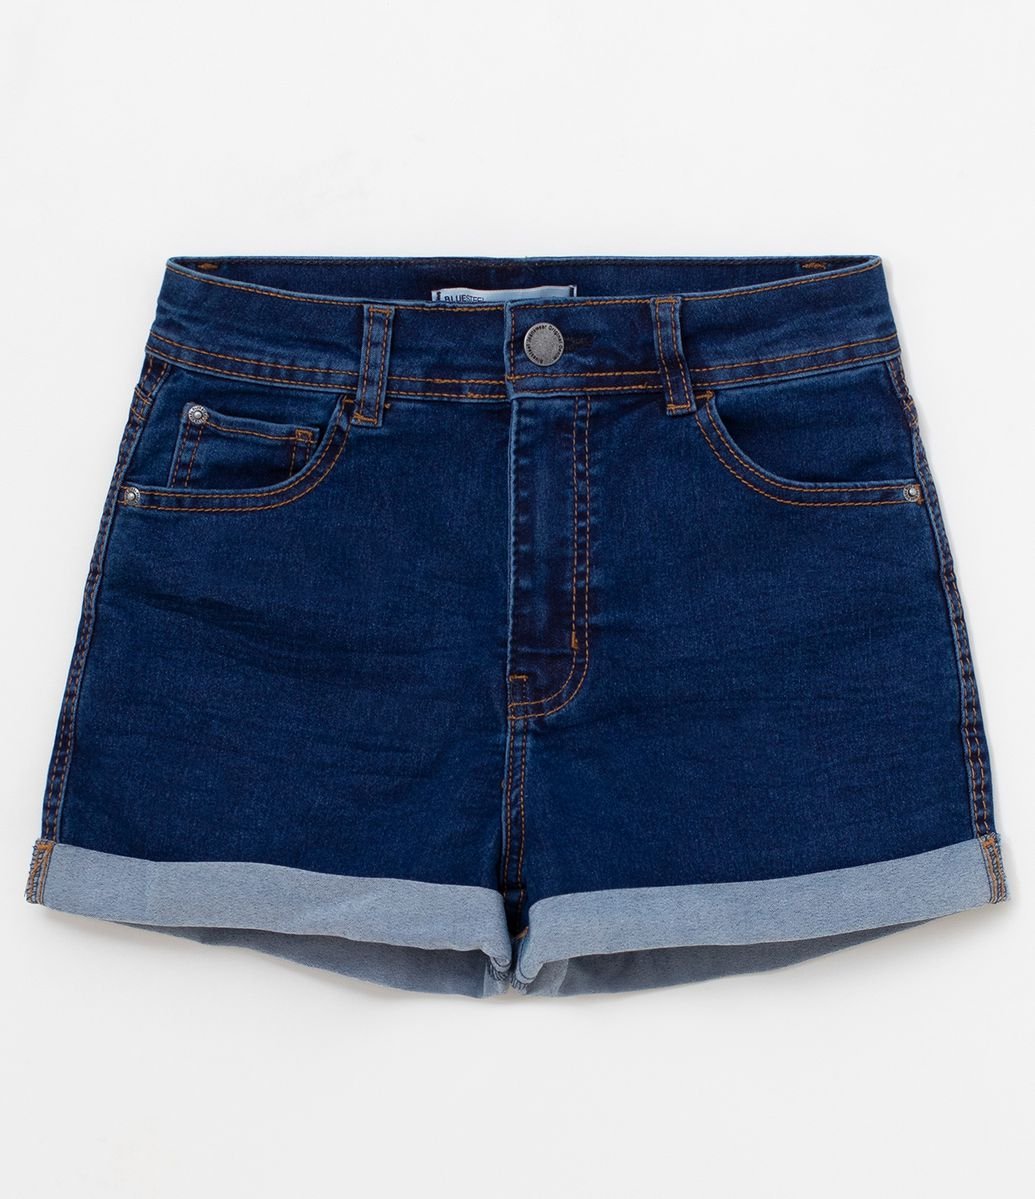 short jeans infantil cintura alta